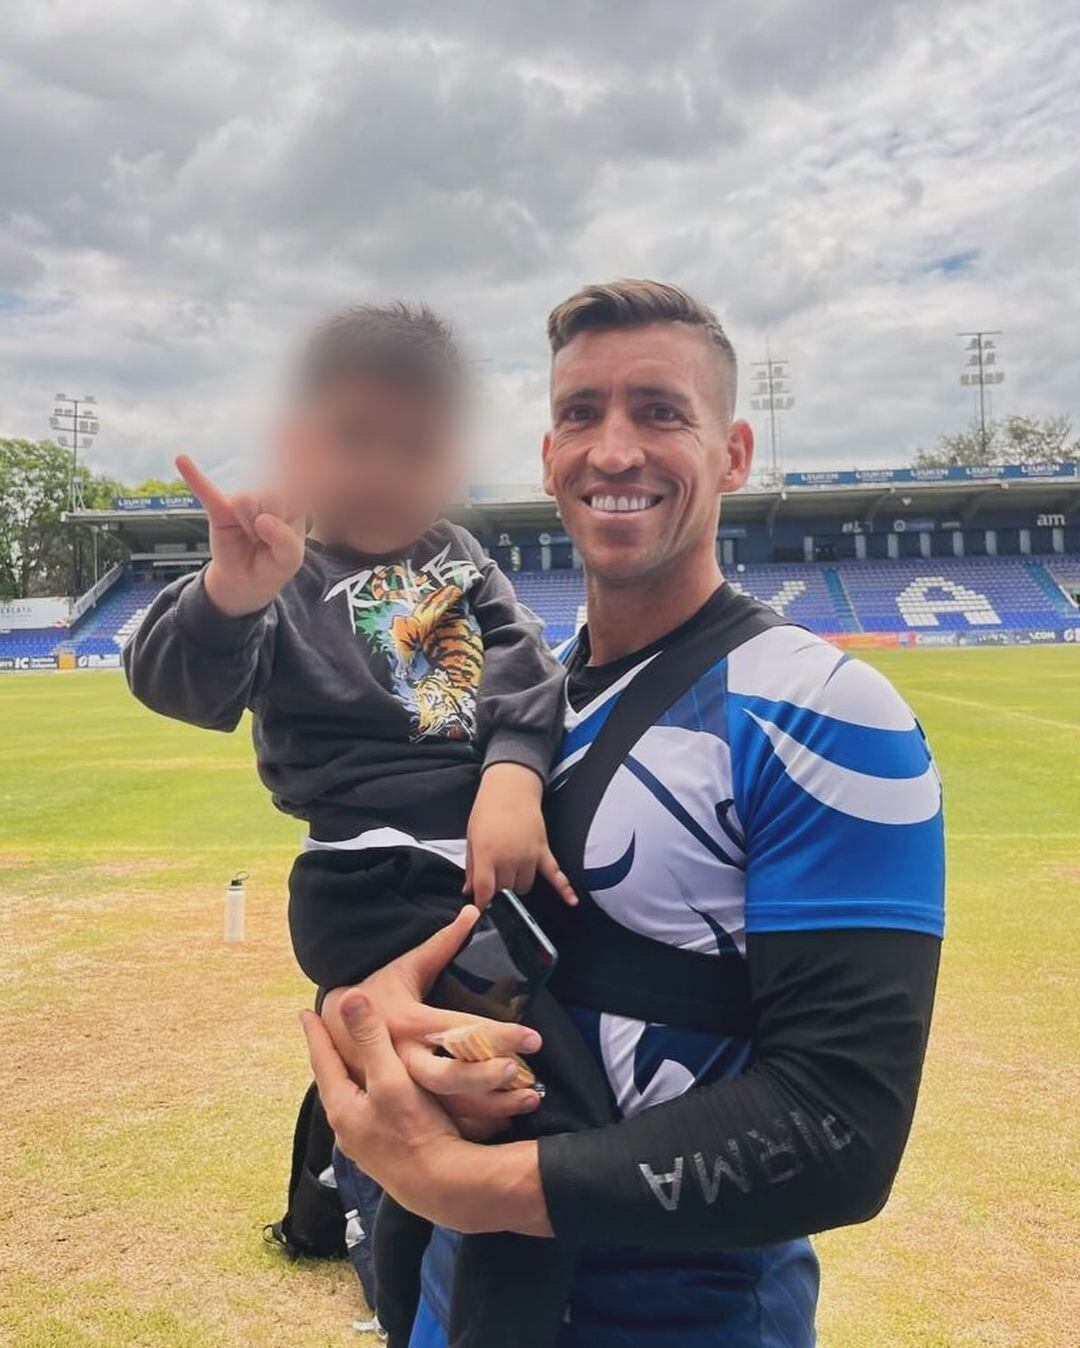 El futbolista Nico Vikonis llevó a su hijo Luka, al que tuvo con Paola Salcedo, a vivir con él en Uruguay. (Foto: Instagram @nicovikonis)